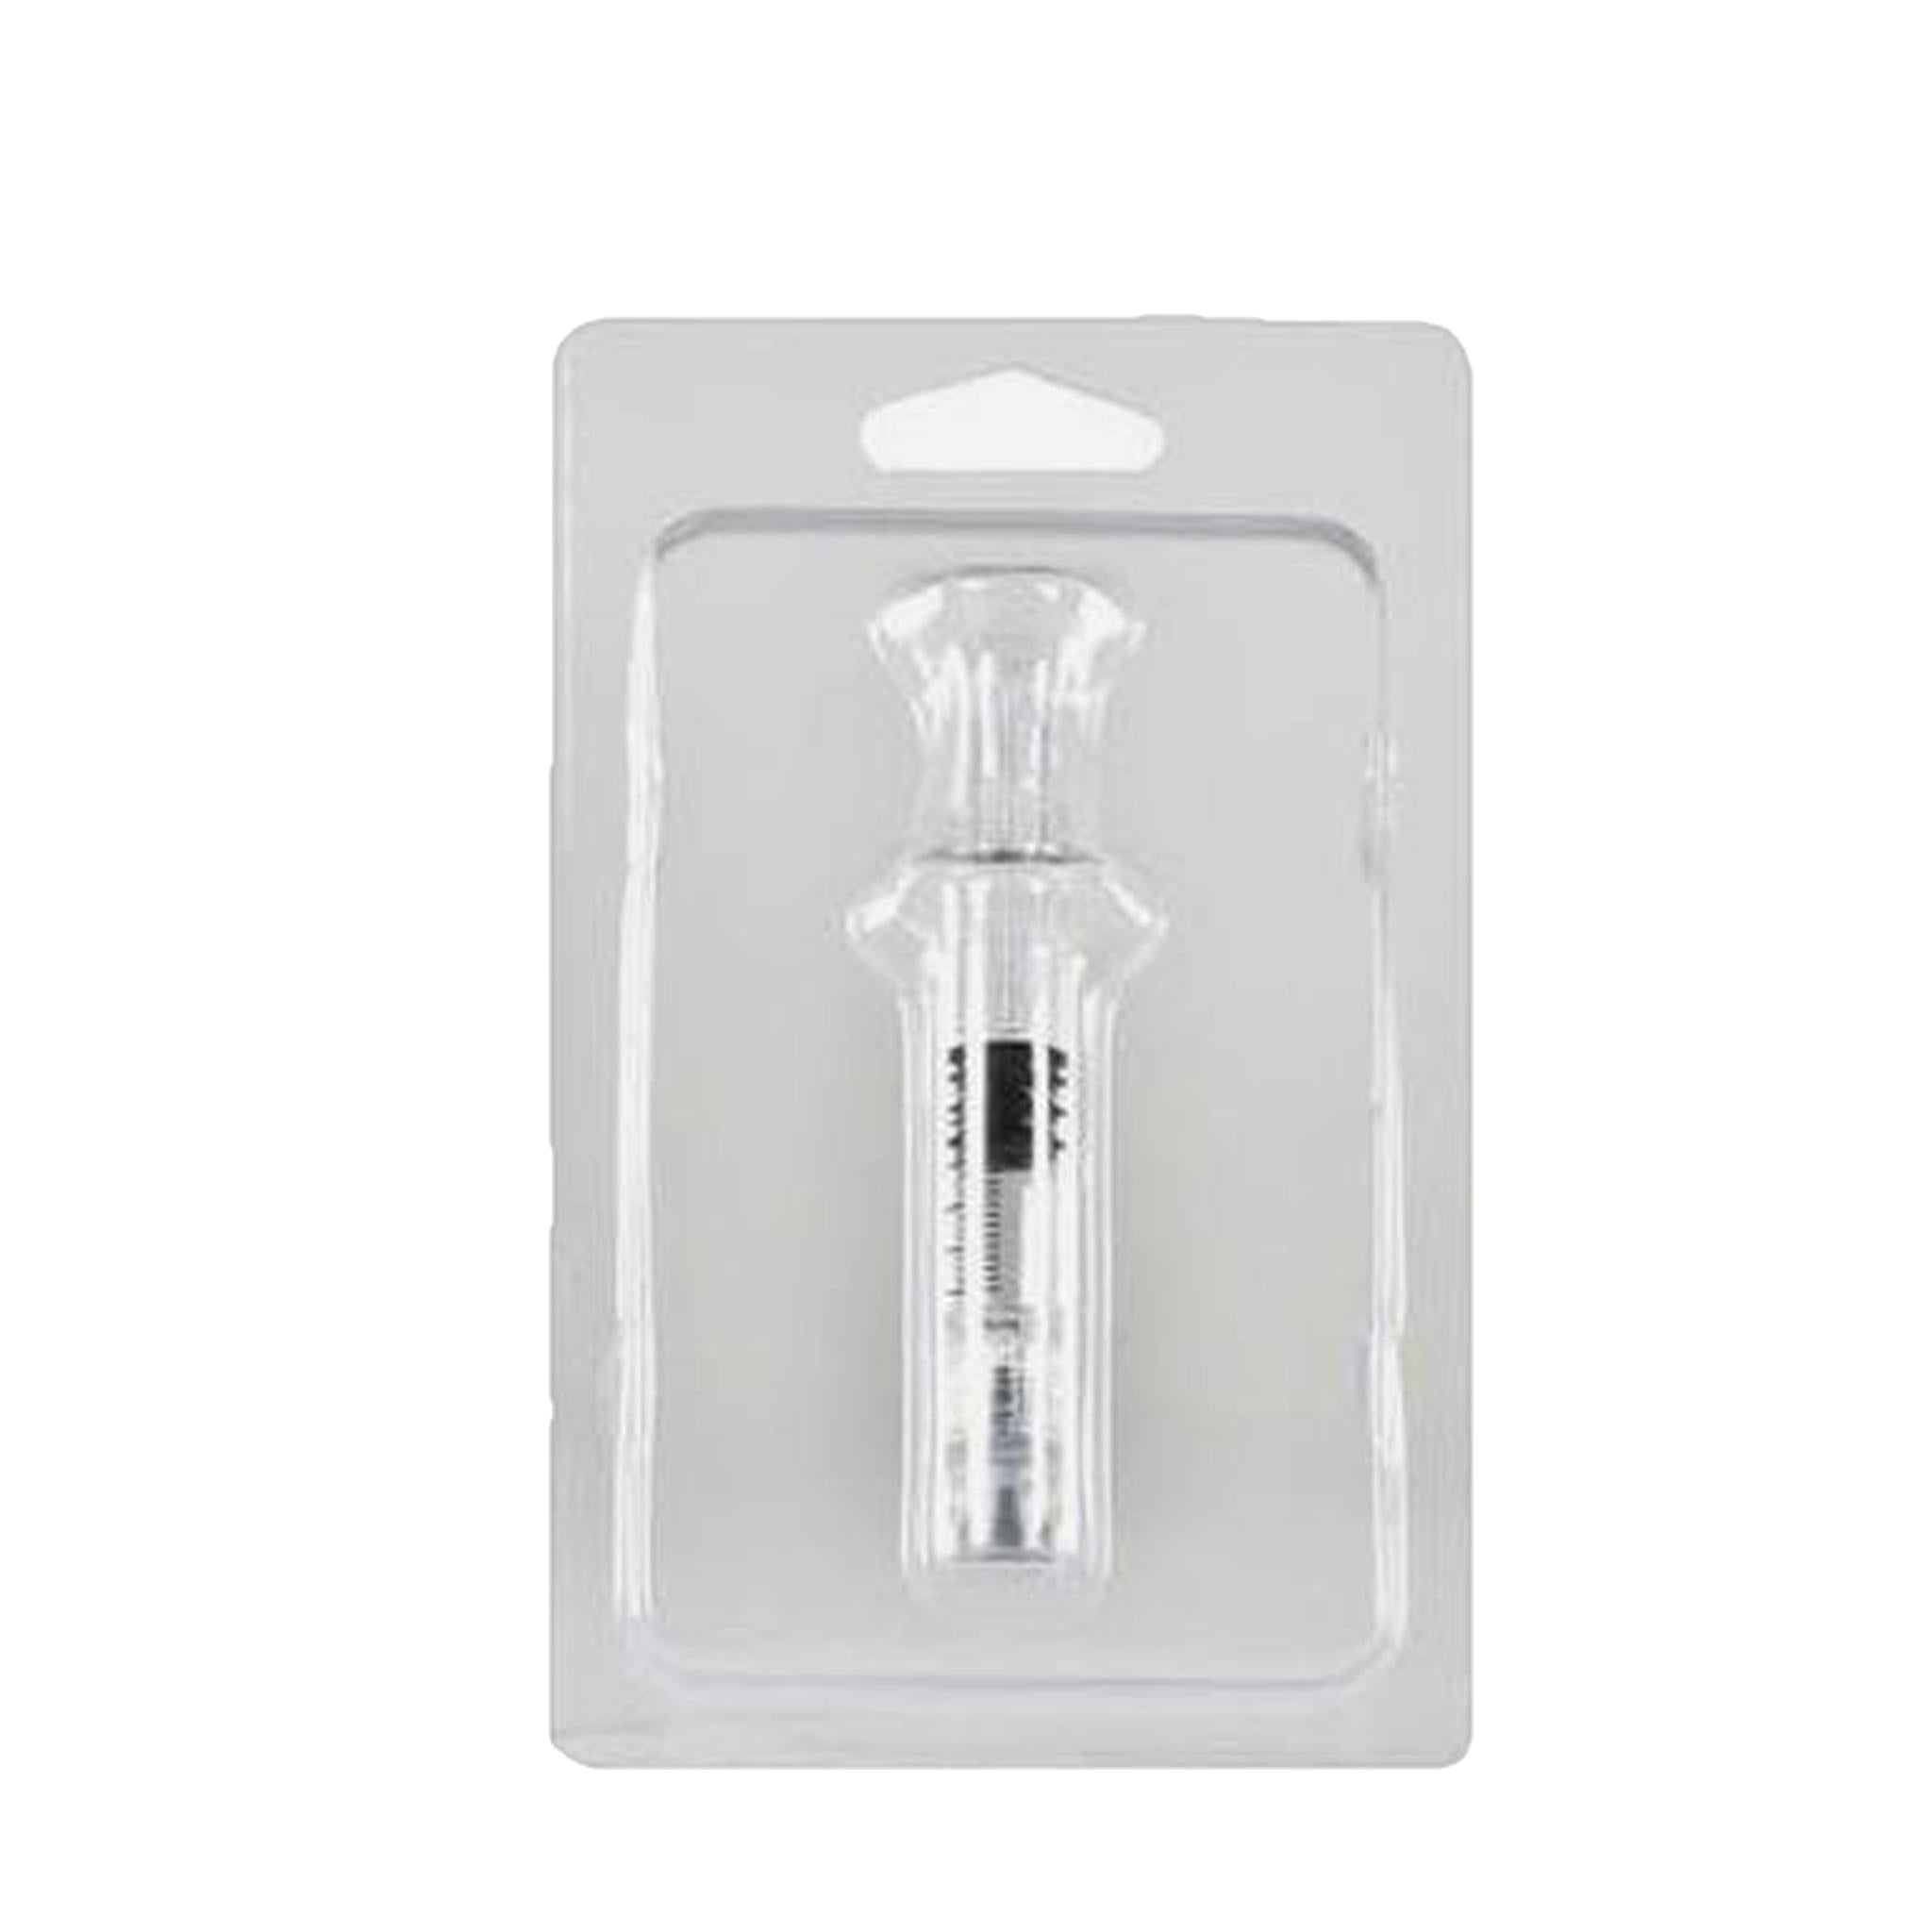 Blank Clamshell Blister Packaging for 1mL Syringe-Syringe-Vape Pens Wholesale